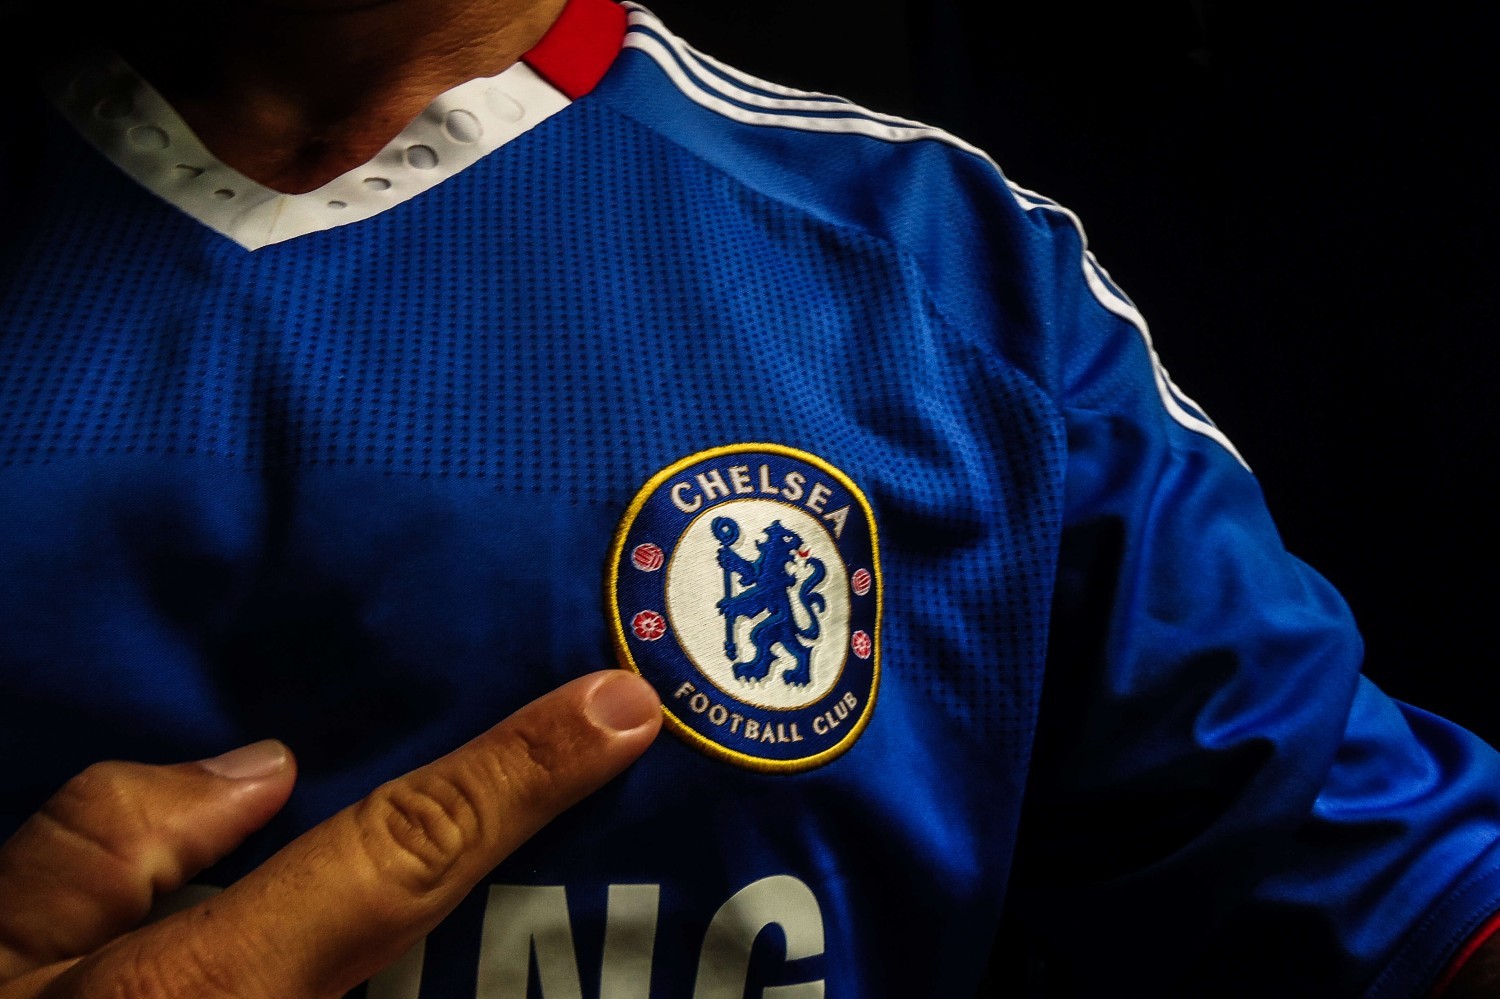 Chelsea u progu przymusowej rewolucji kadrowej?! Piłkarze badają możliwości opuszczenia klubu